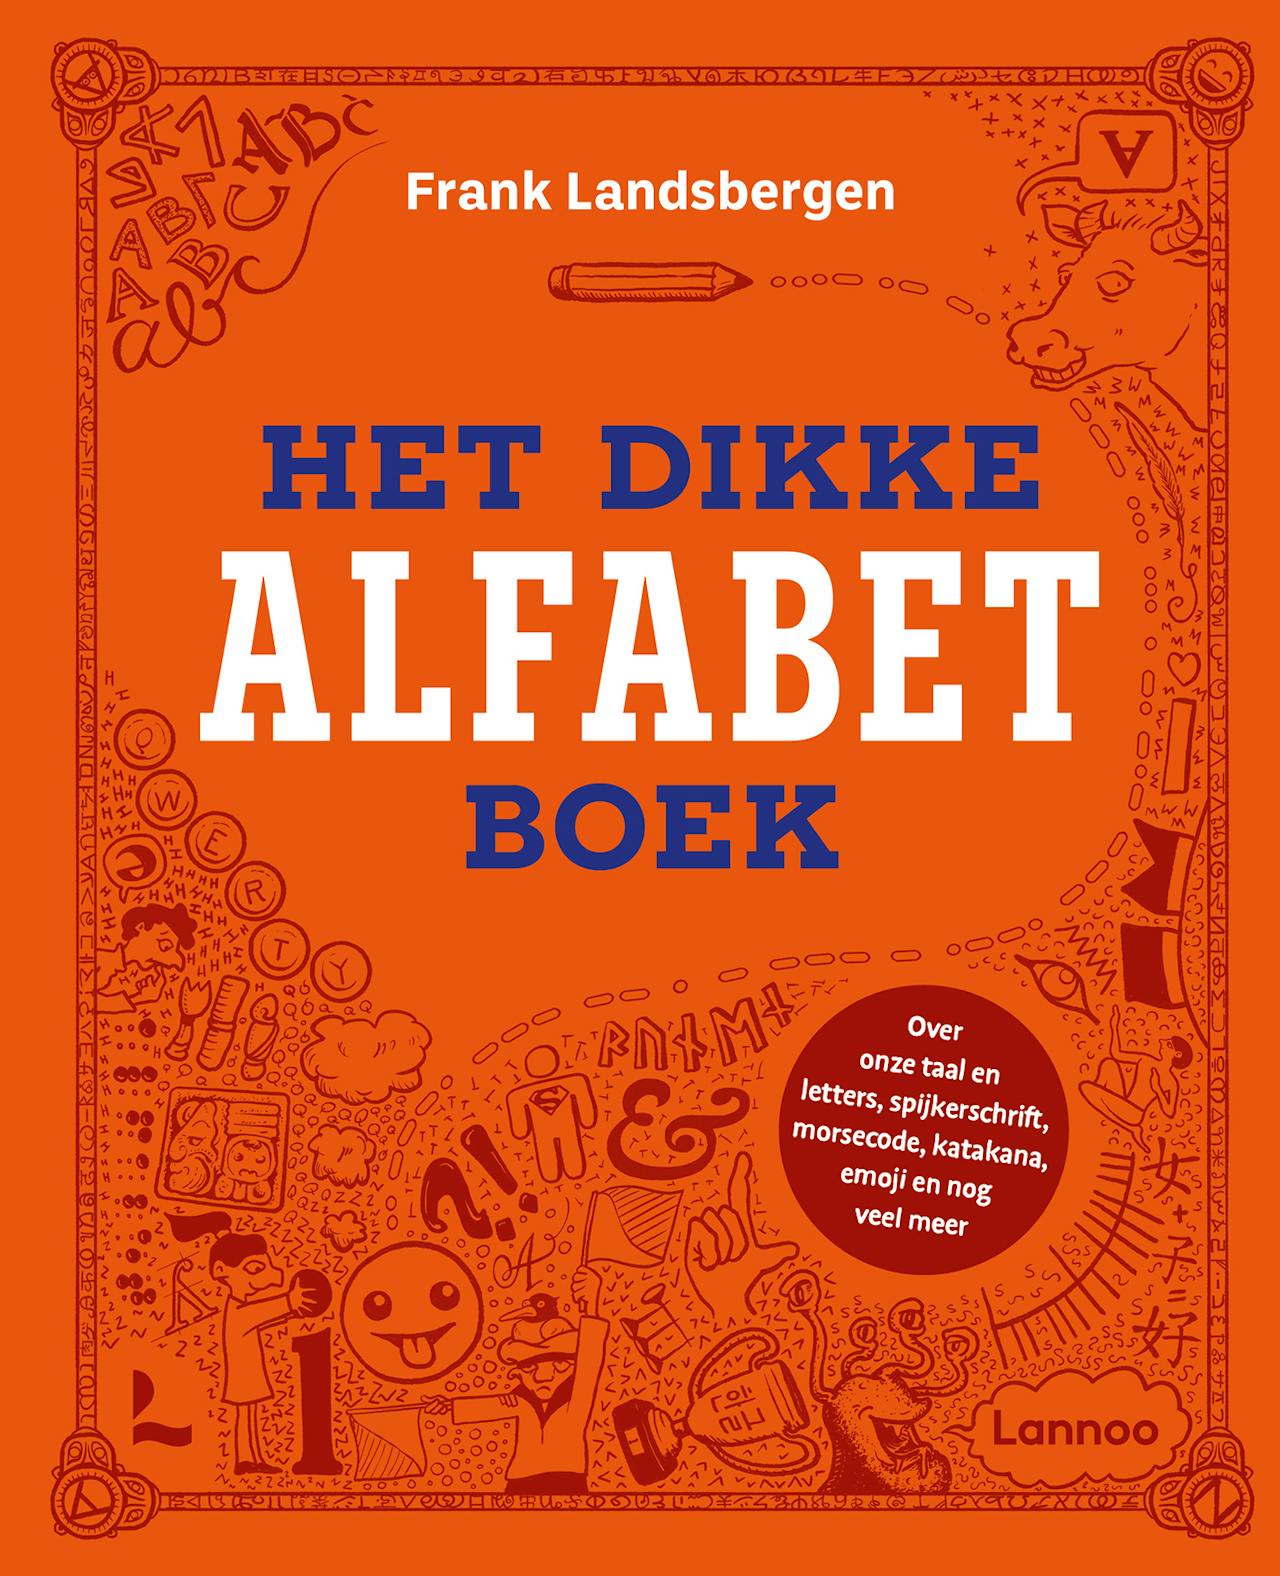 Een cover van het dikke alfabet boek van Frank Landsbergen.